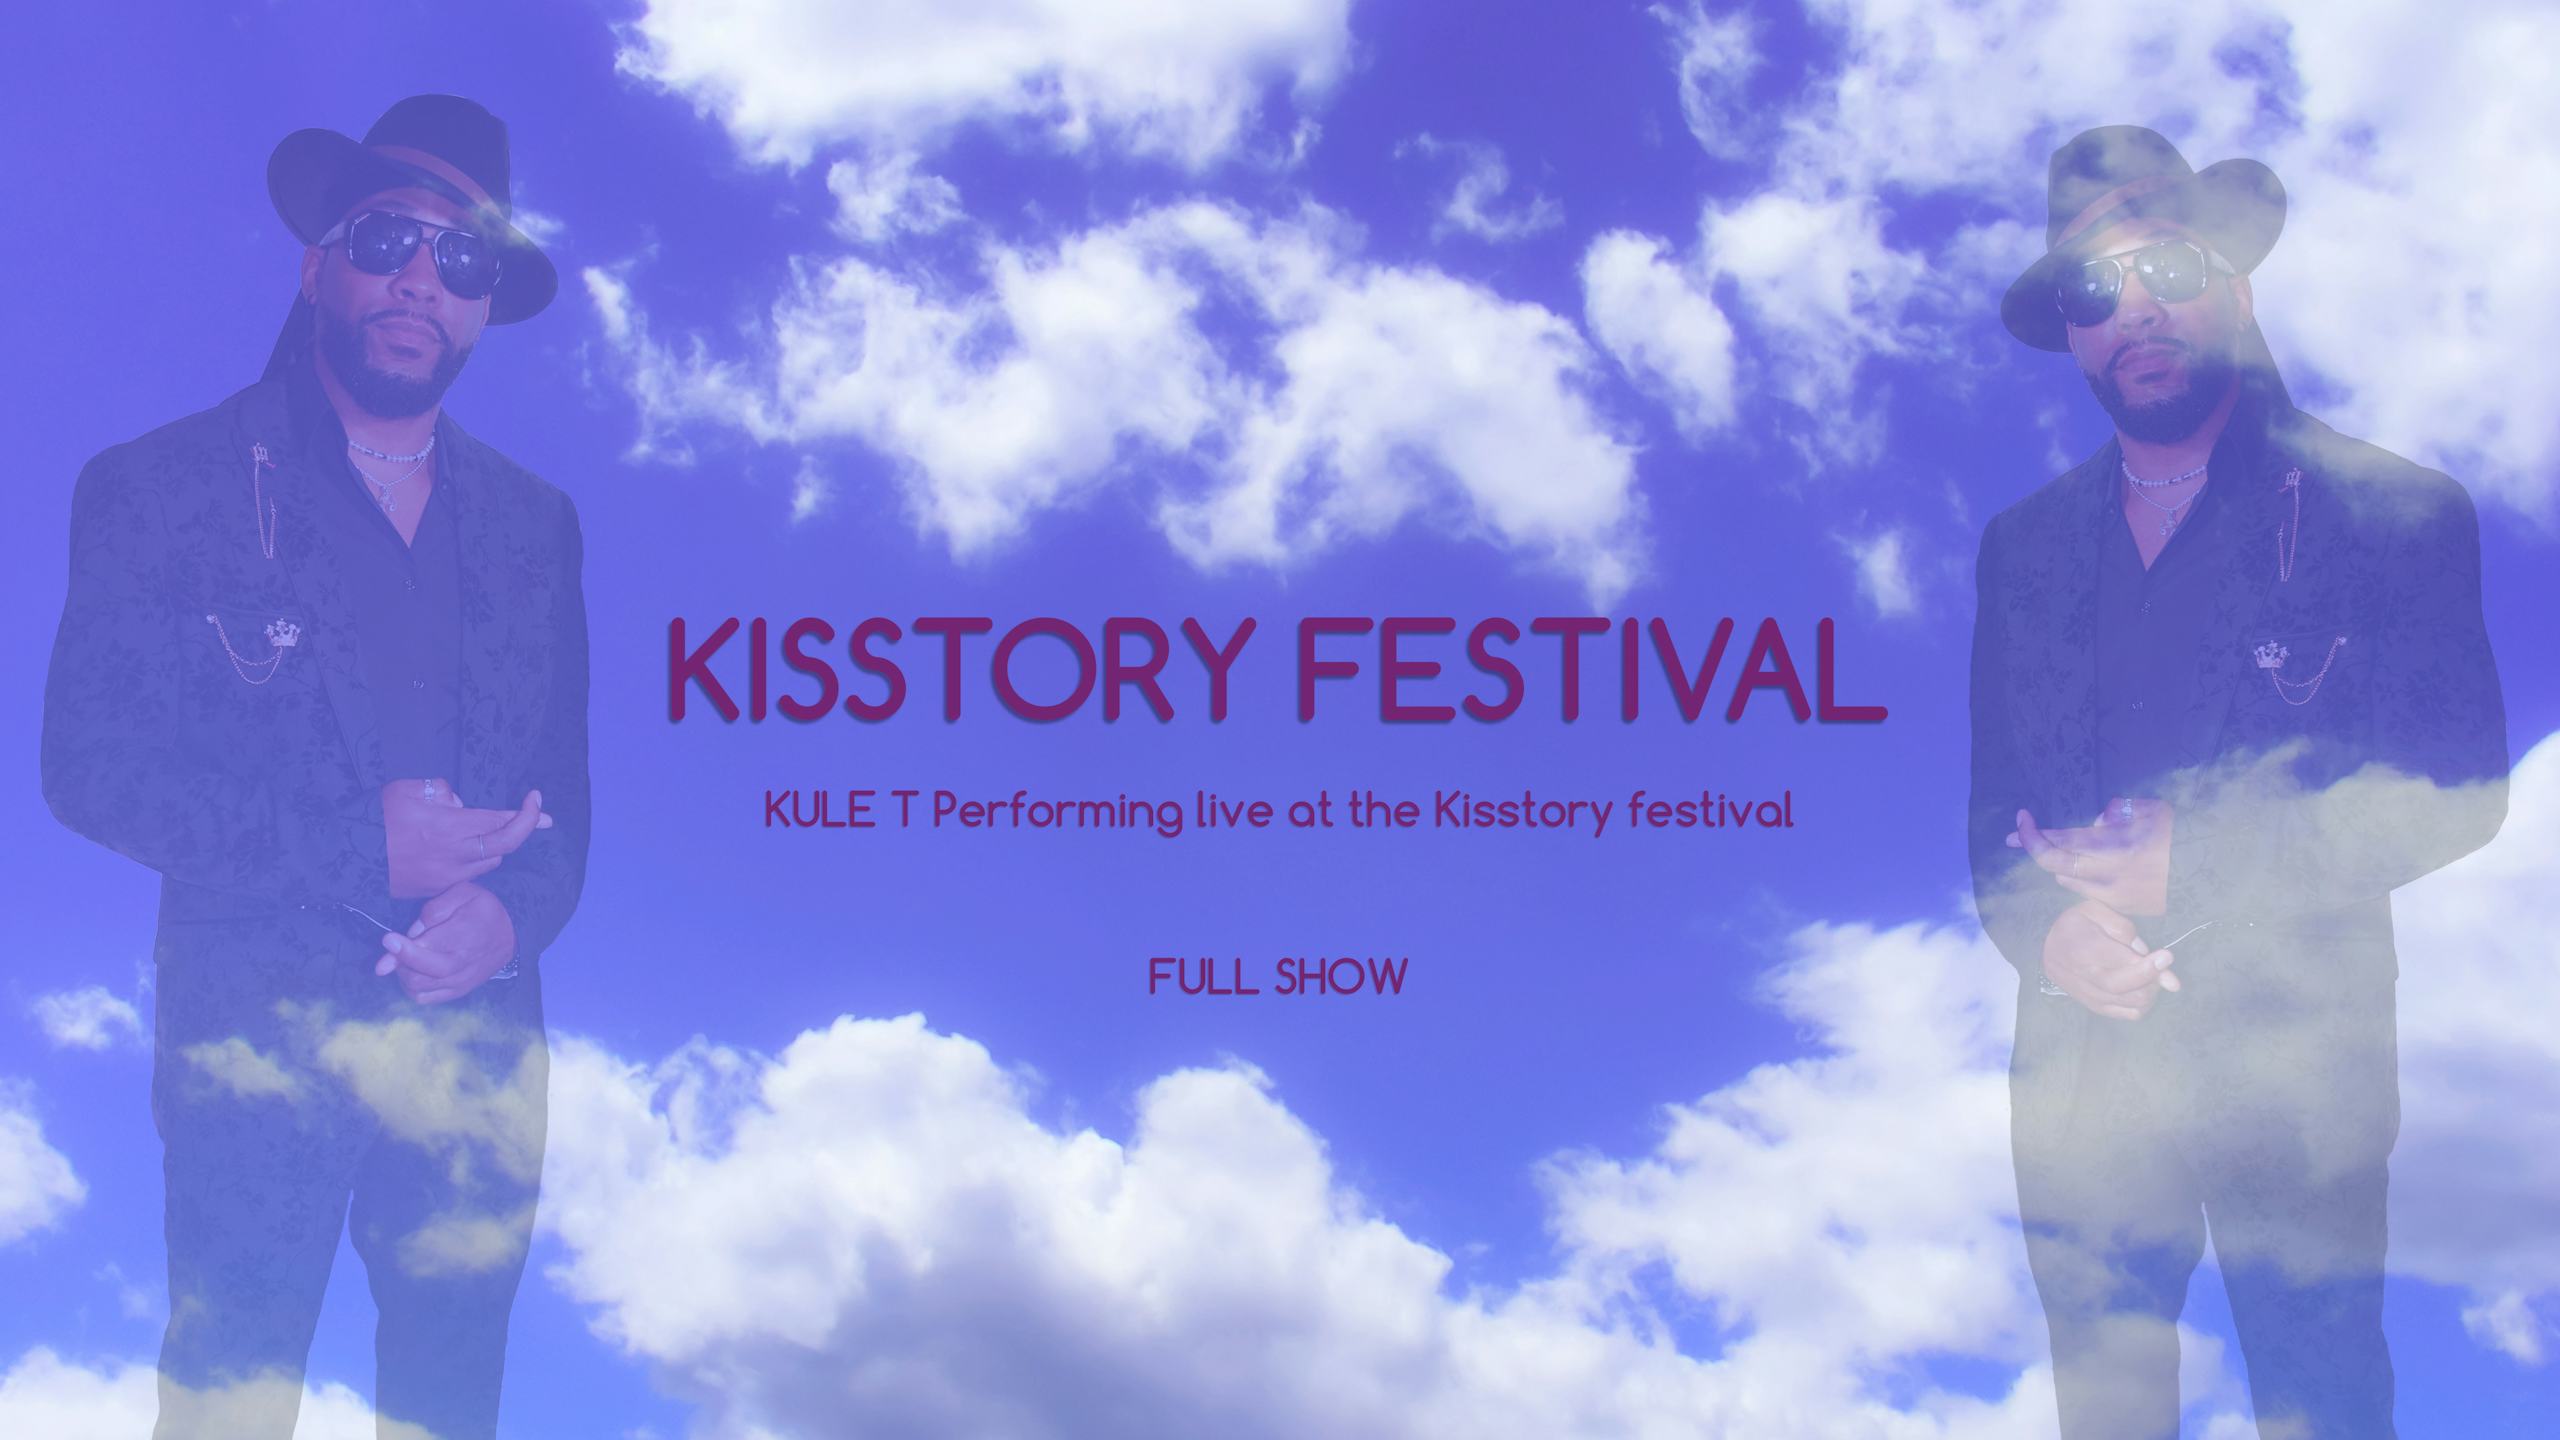 Kisstory Festival Performance (Full Show)